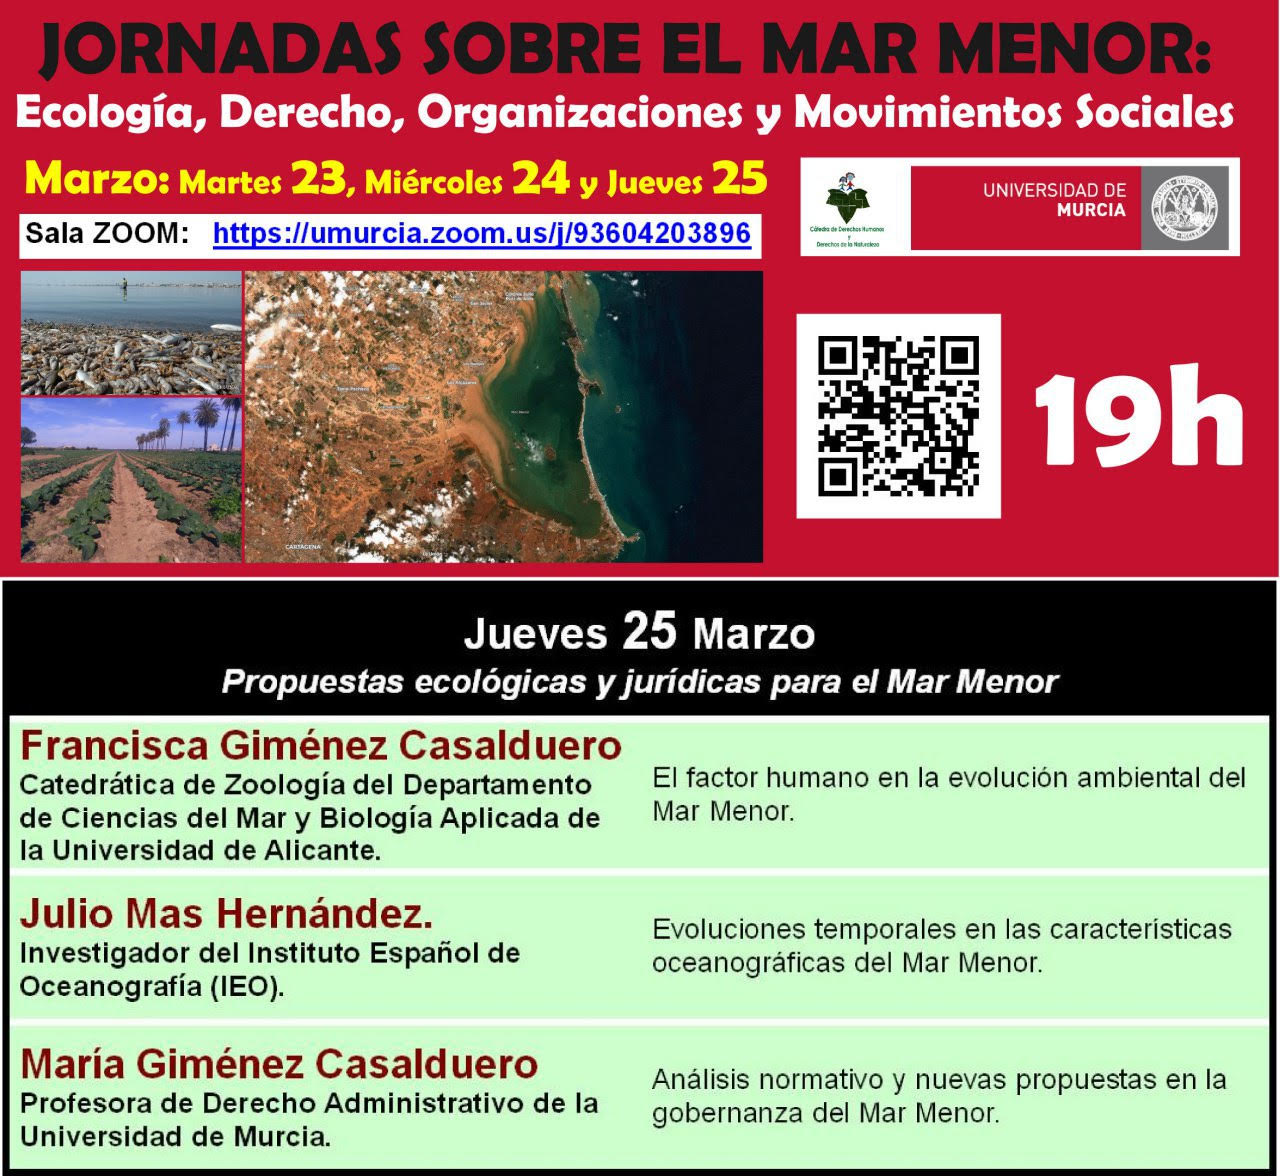 Jornadas sobre el Mar Menor: Ecología, Derecho, Organizaciones y Movimientos Sociales, con la UMU